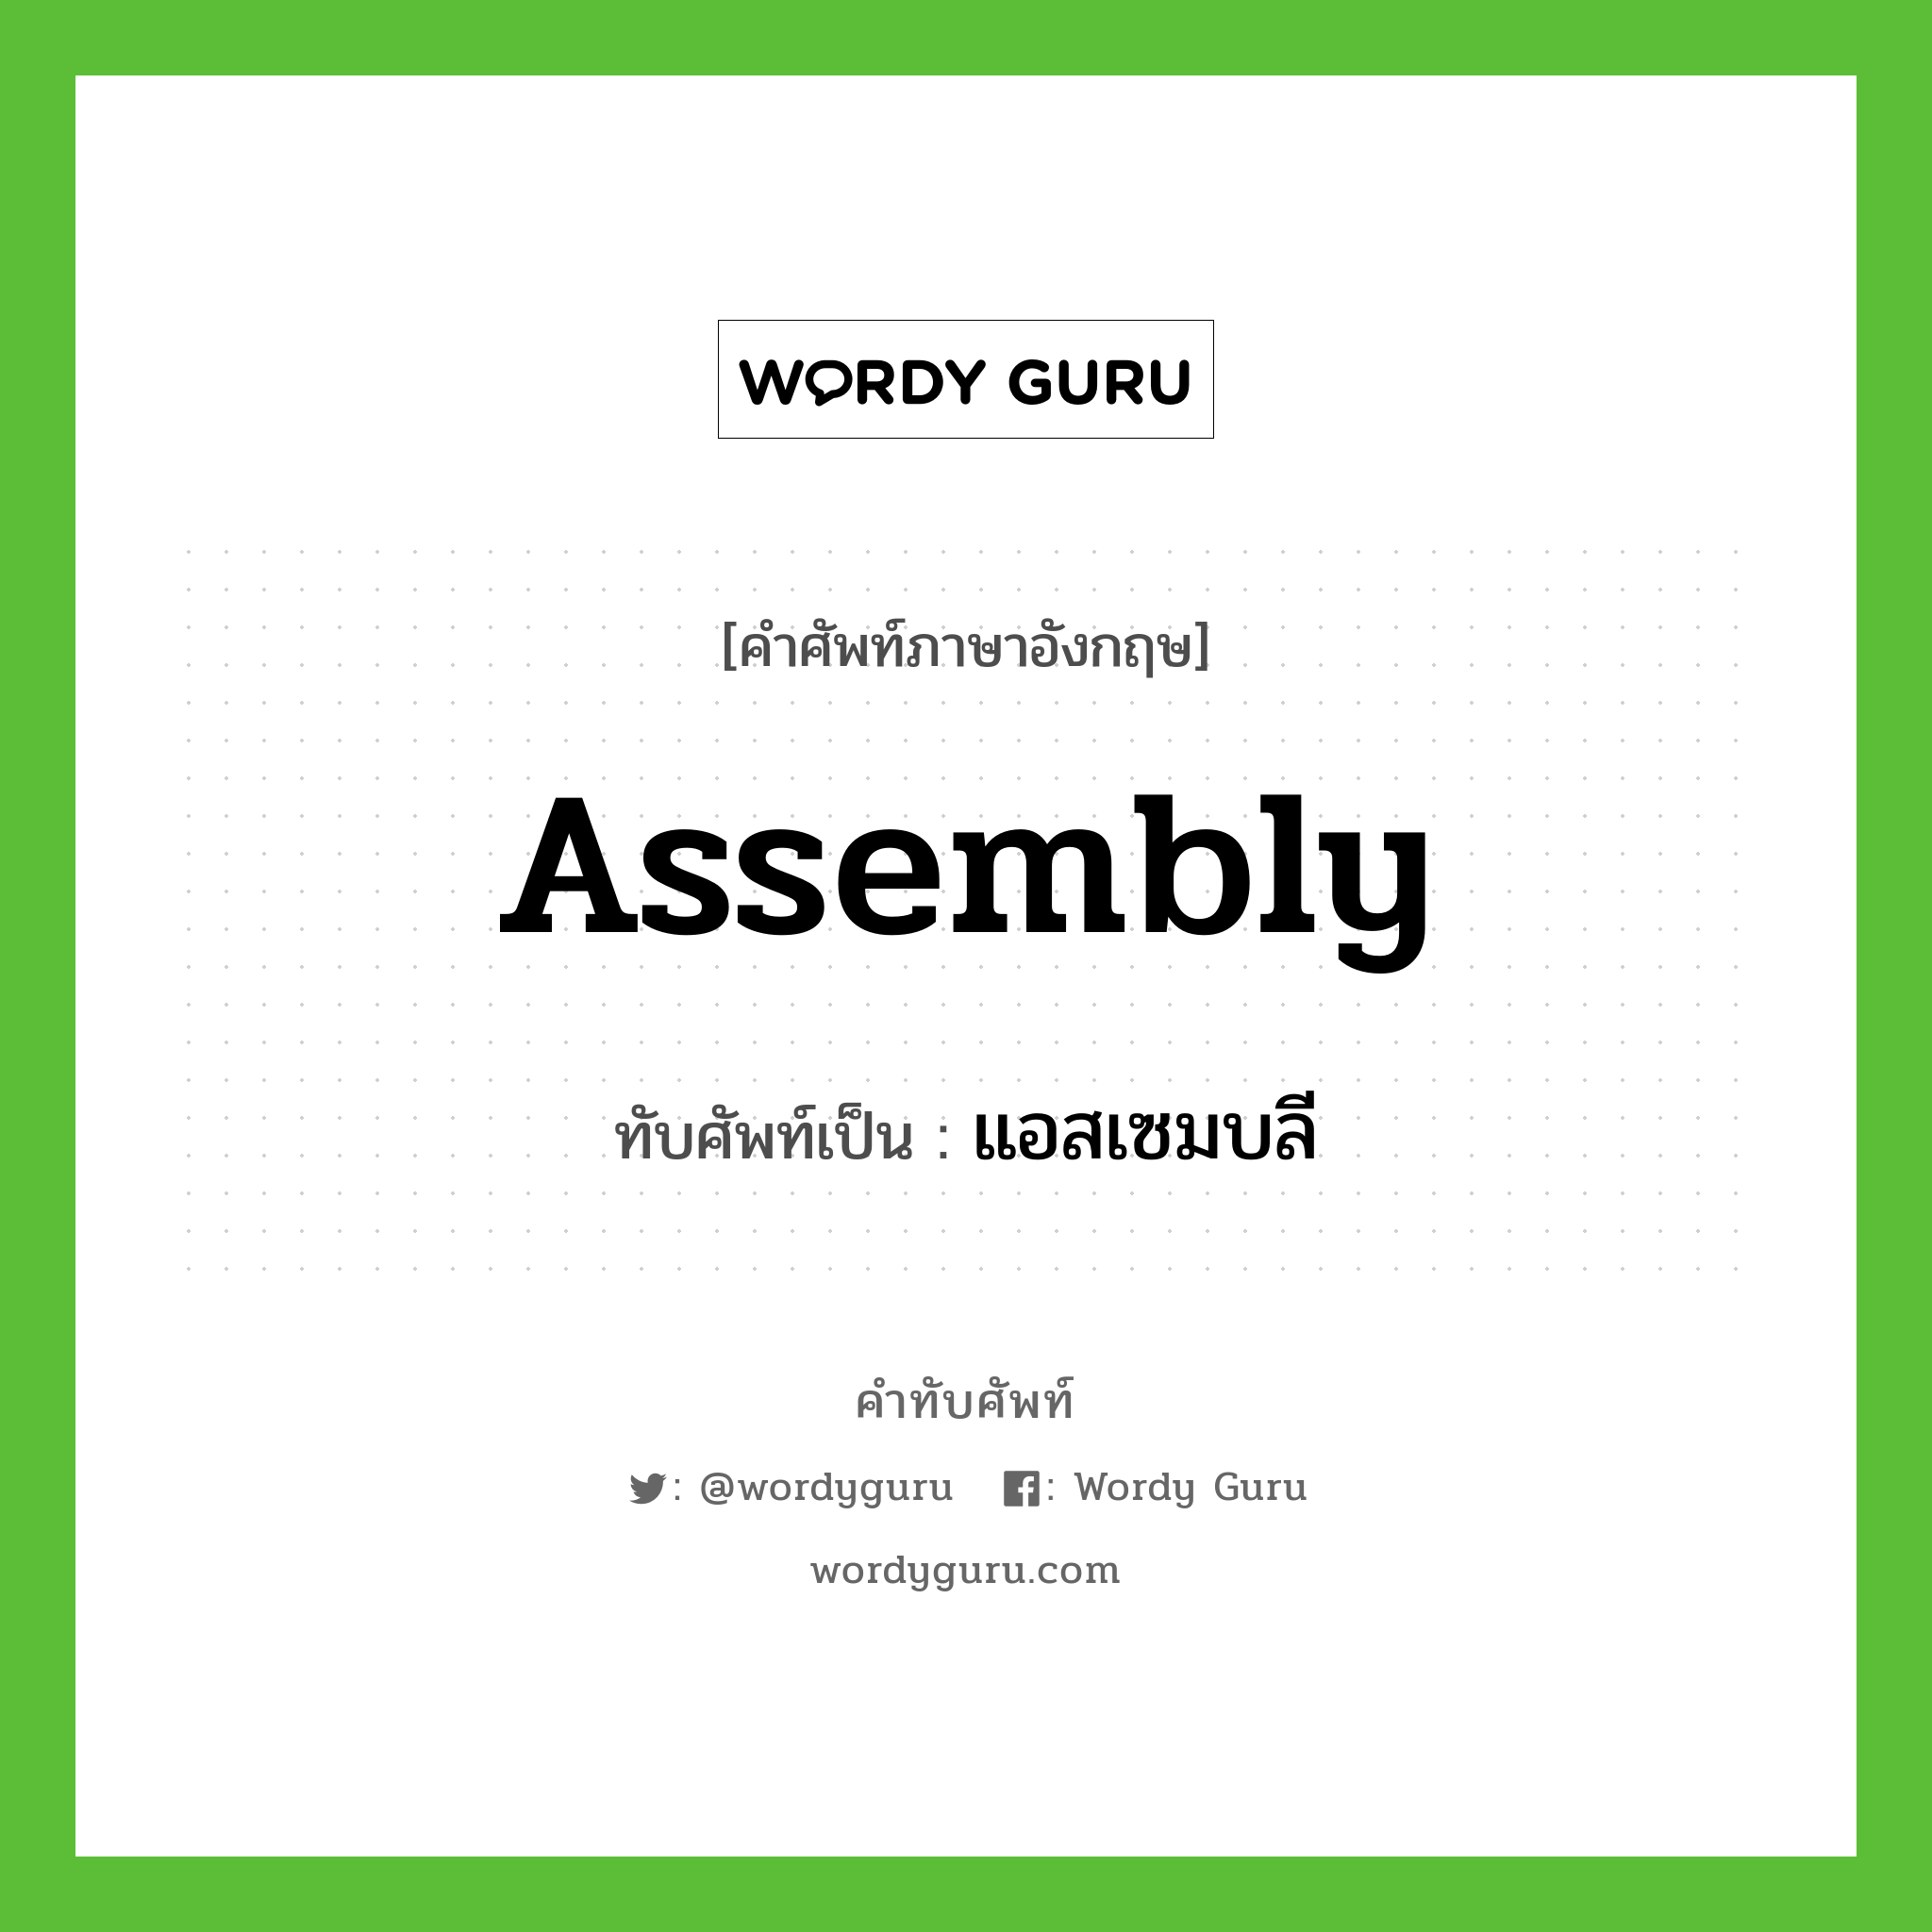 assembly เขียนเป็นคำไทยว่าอะไร?, คำศัพท์ภาษาอังกฤษ assembly ทับศัพท์เป็น แอสเซมบลี